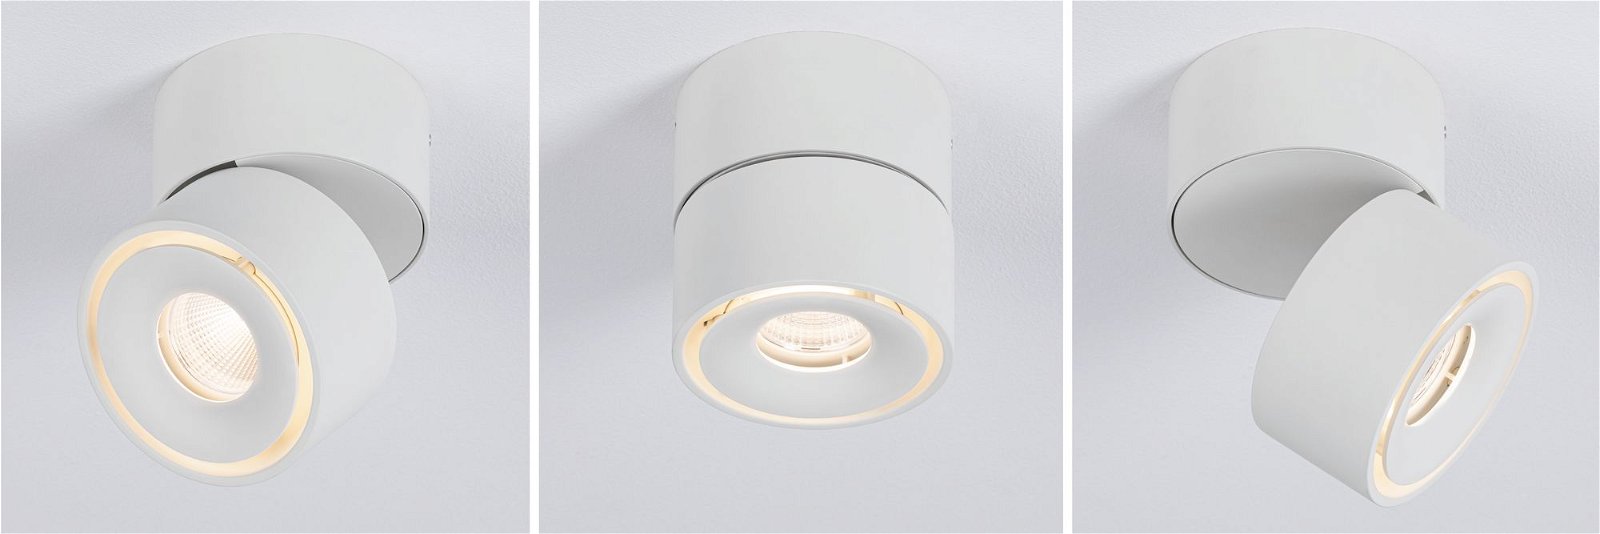 LED Ceiling luminaire Spircle 78mm 8W 550lm 230V 3000K Matt white